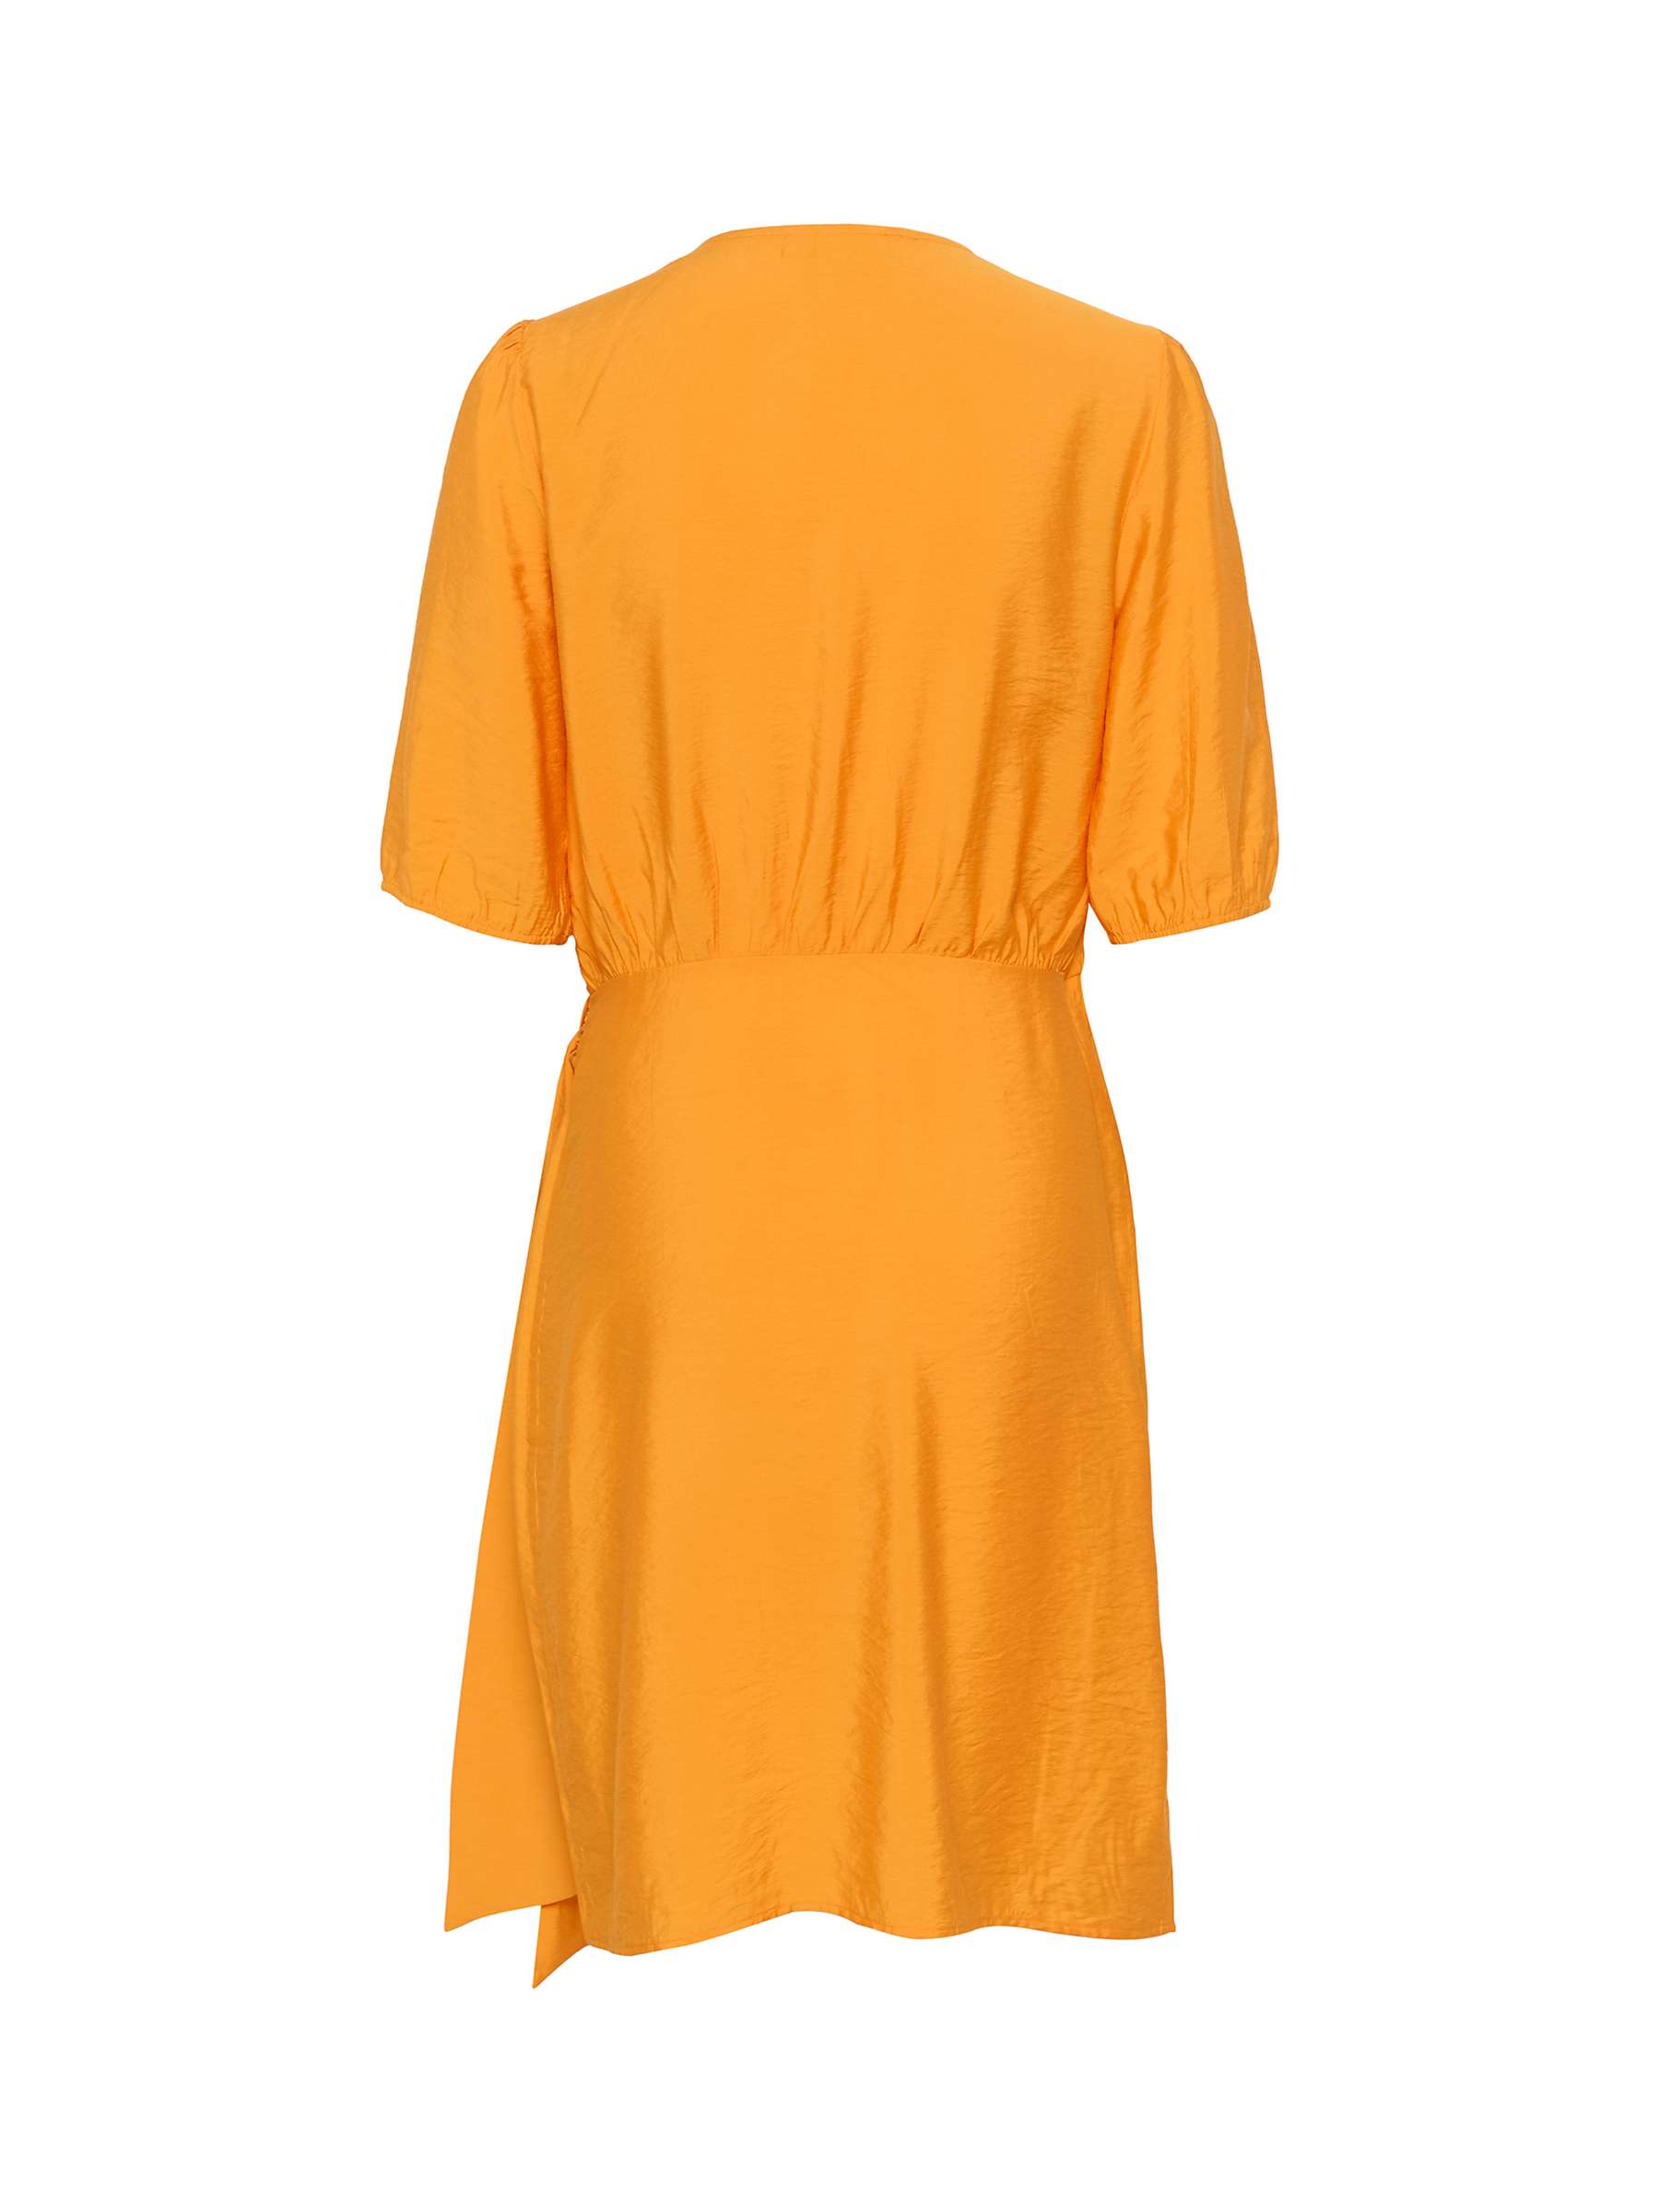 Buy Saint Tropez Eleanor Short Sleeve Wrap Dress, Apricot Online at johnlewis.com